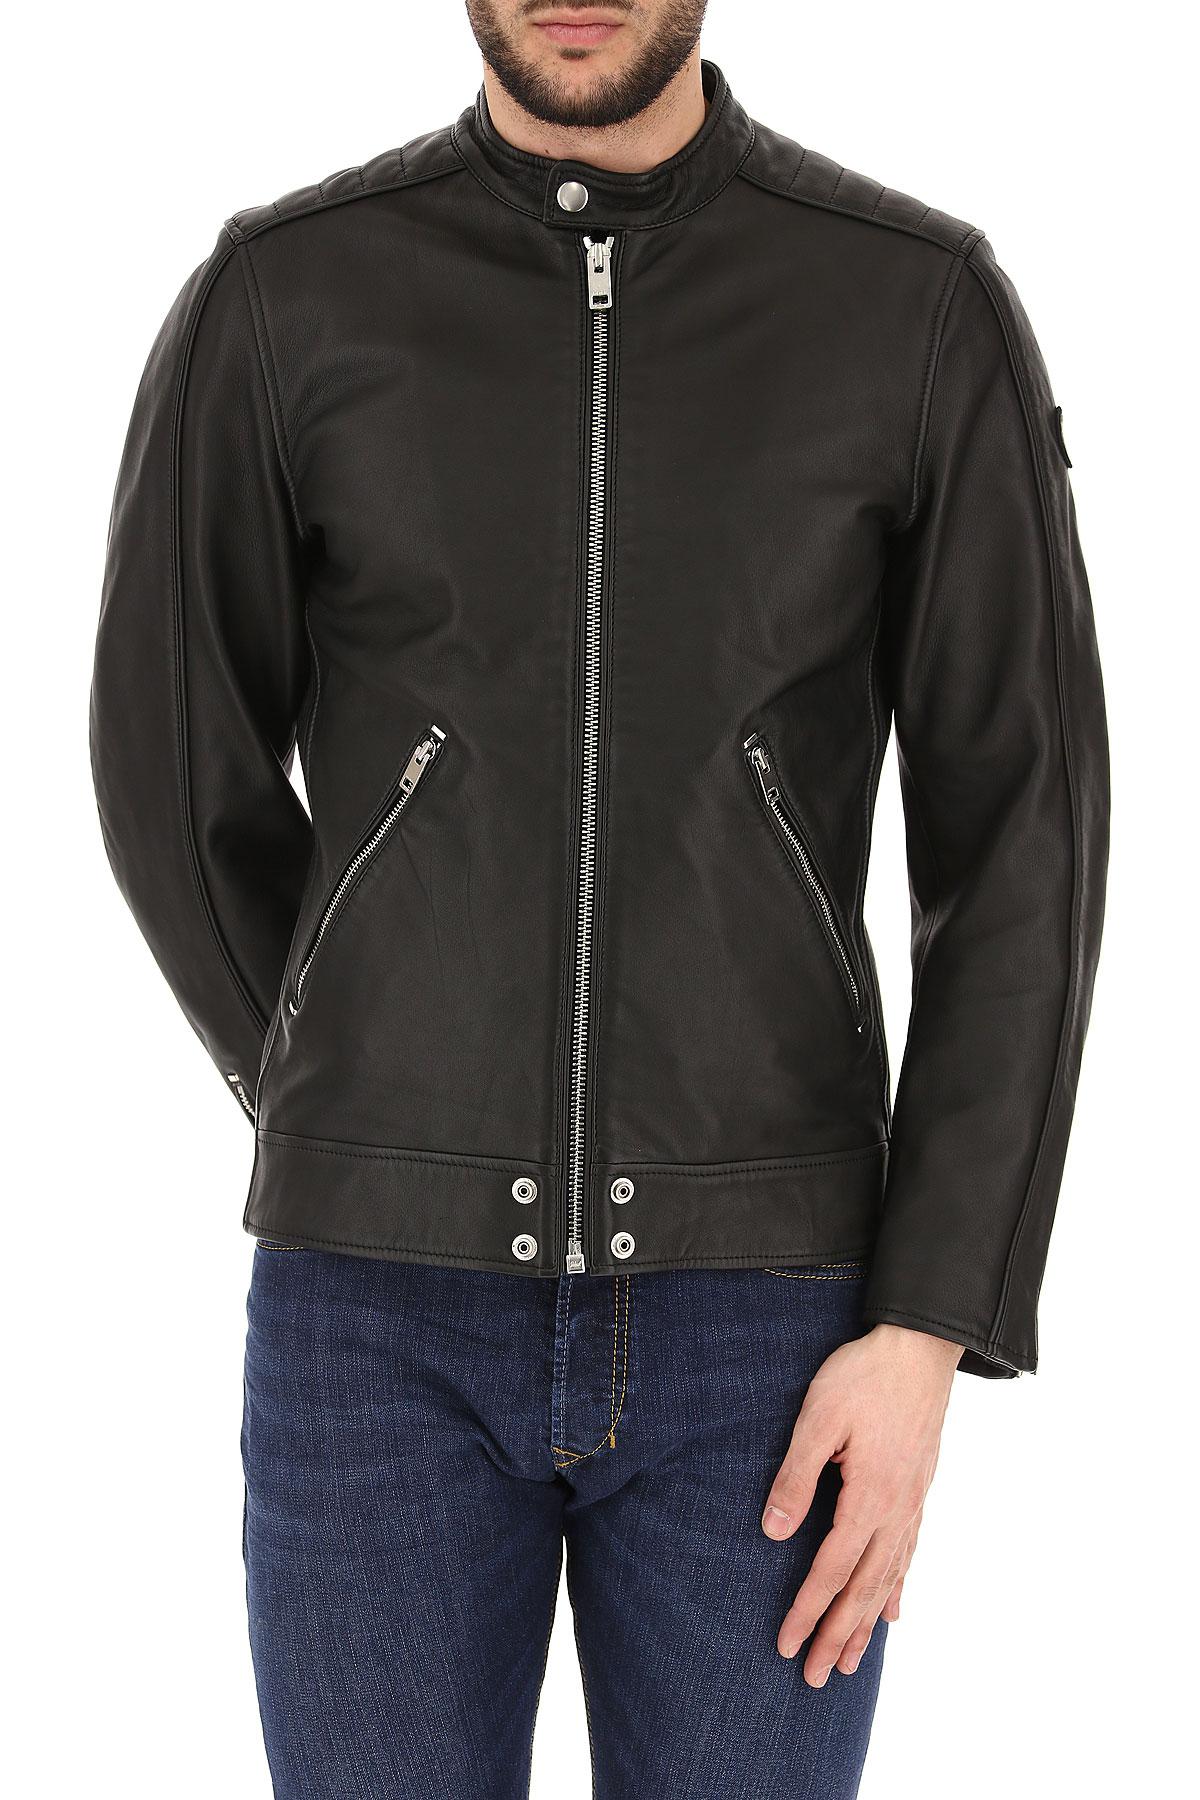 DIESEL Leather Jacket For Men On Sale in Black for Men - Save 13% - Lyst